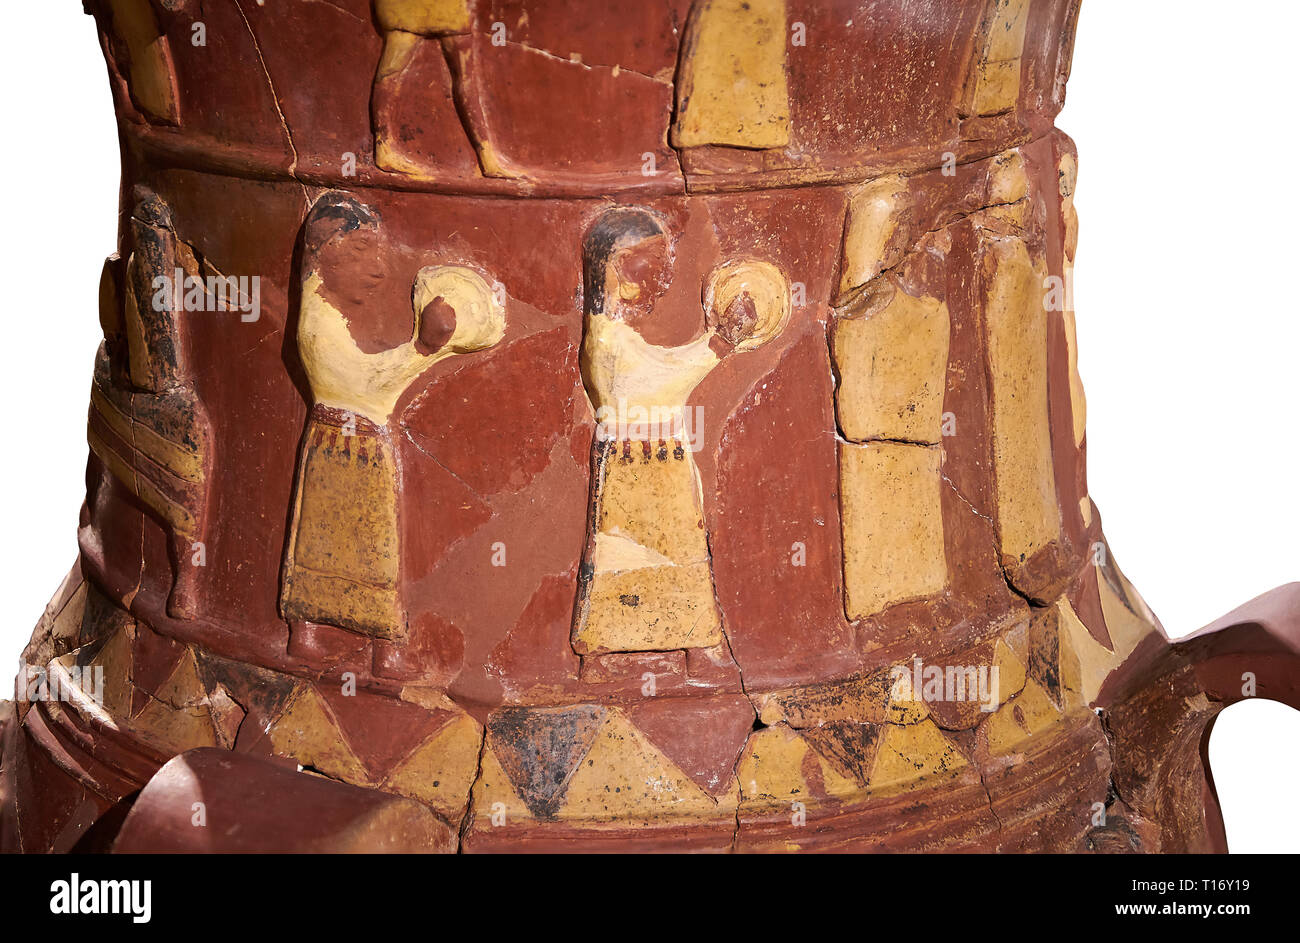 Nahaufnahme der Inandik Hethiter Relief dekoriert Kult trankopfers Vase mit Frauen Entlastung Zahlen farbig in Creme, Rot und Schwarz spielen instr eingerichtet Stockfoto